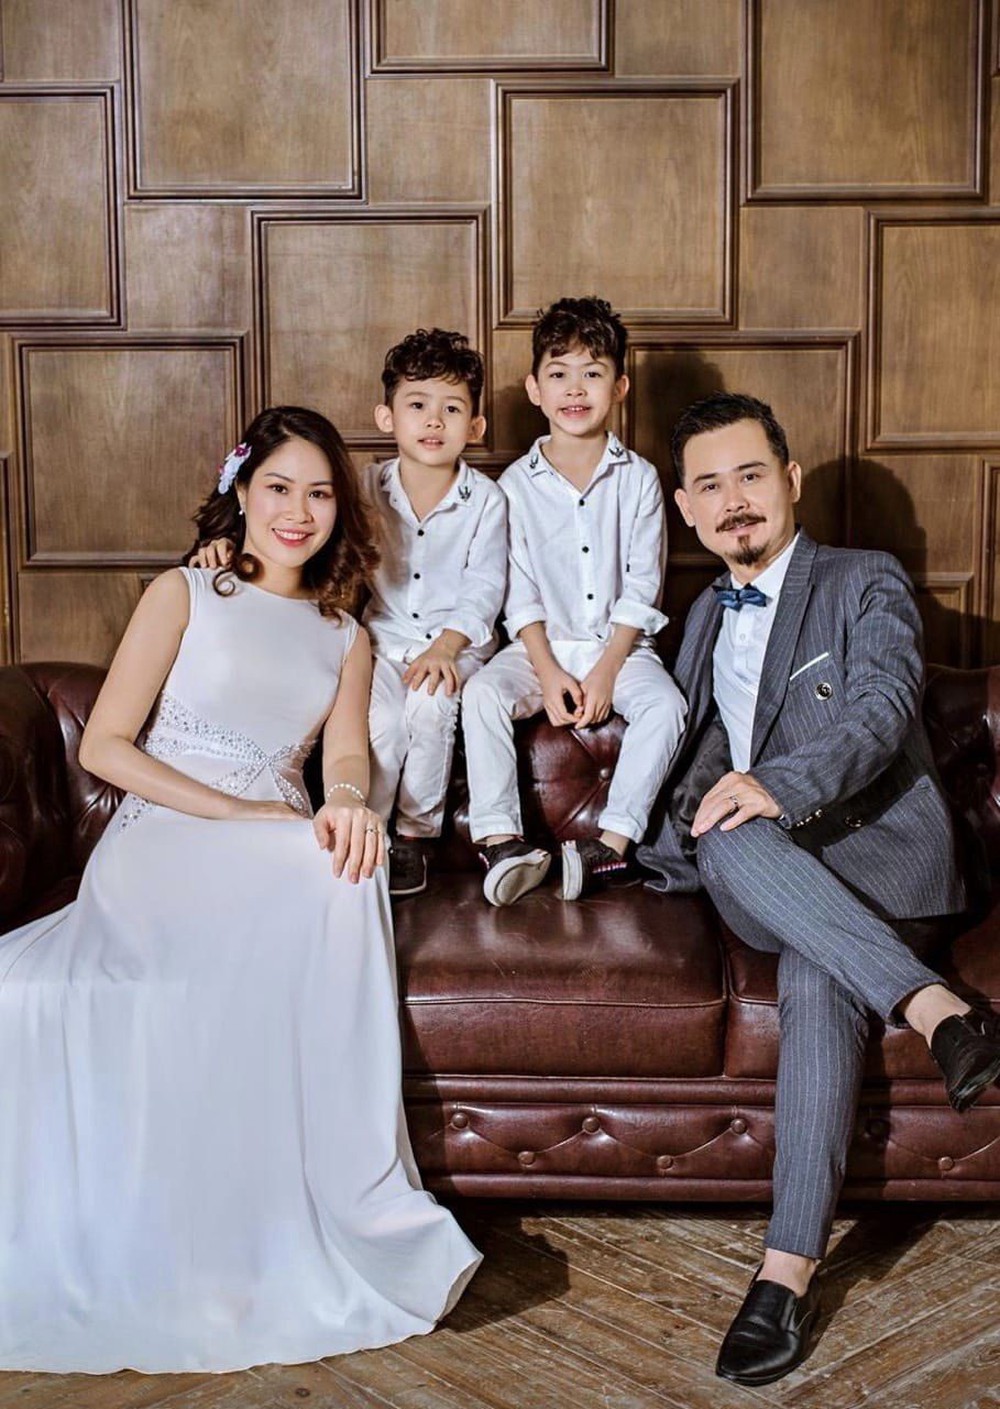 Trùm phản diện mới của màn ảnh Việt: Ngoài đời bán bánh canh ghẹ, sống bình dị bên vợ và 2 con sinh đôi - Ảnh 4.